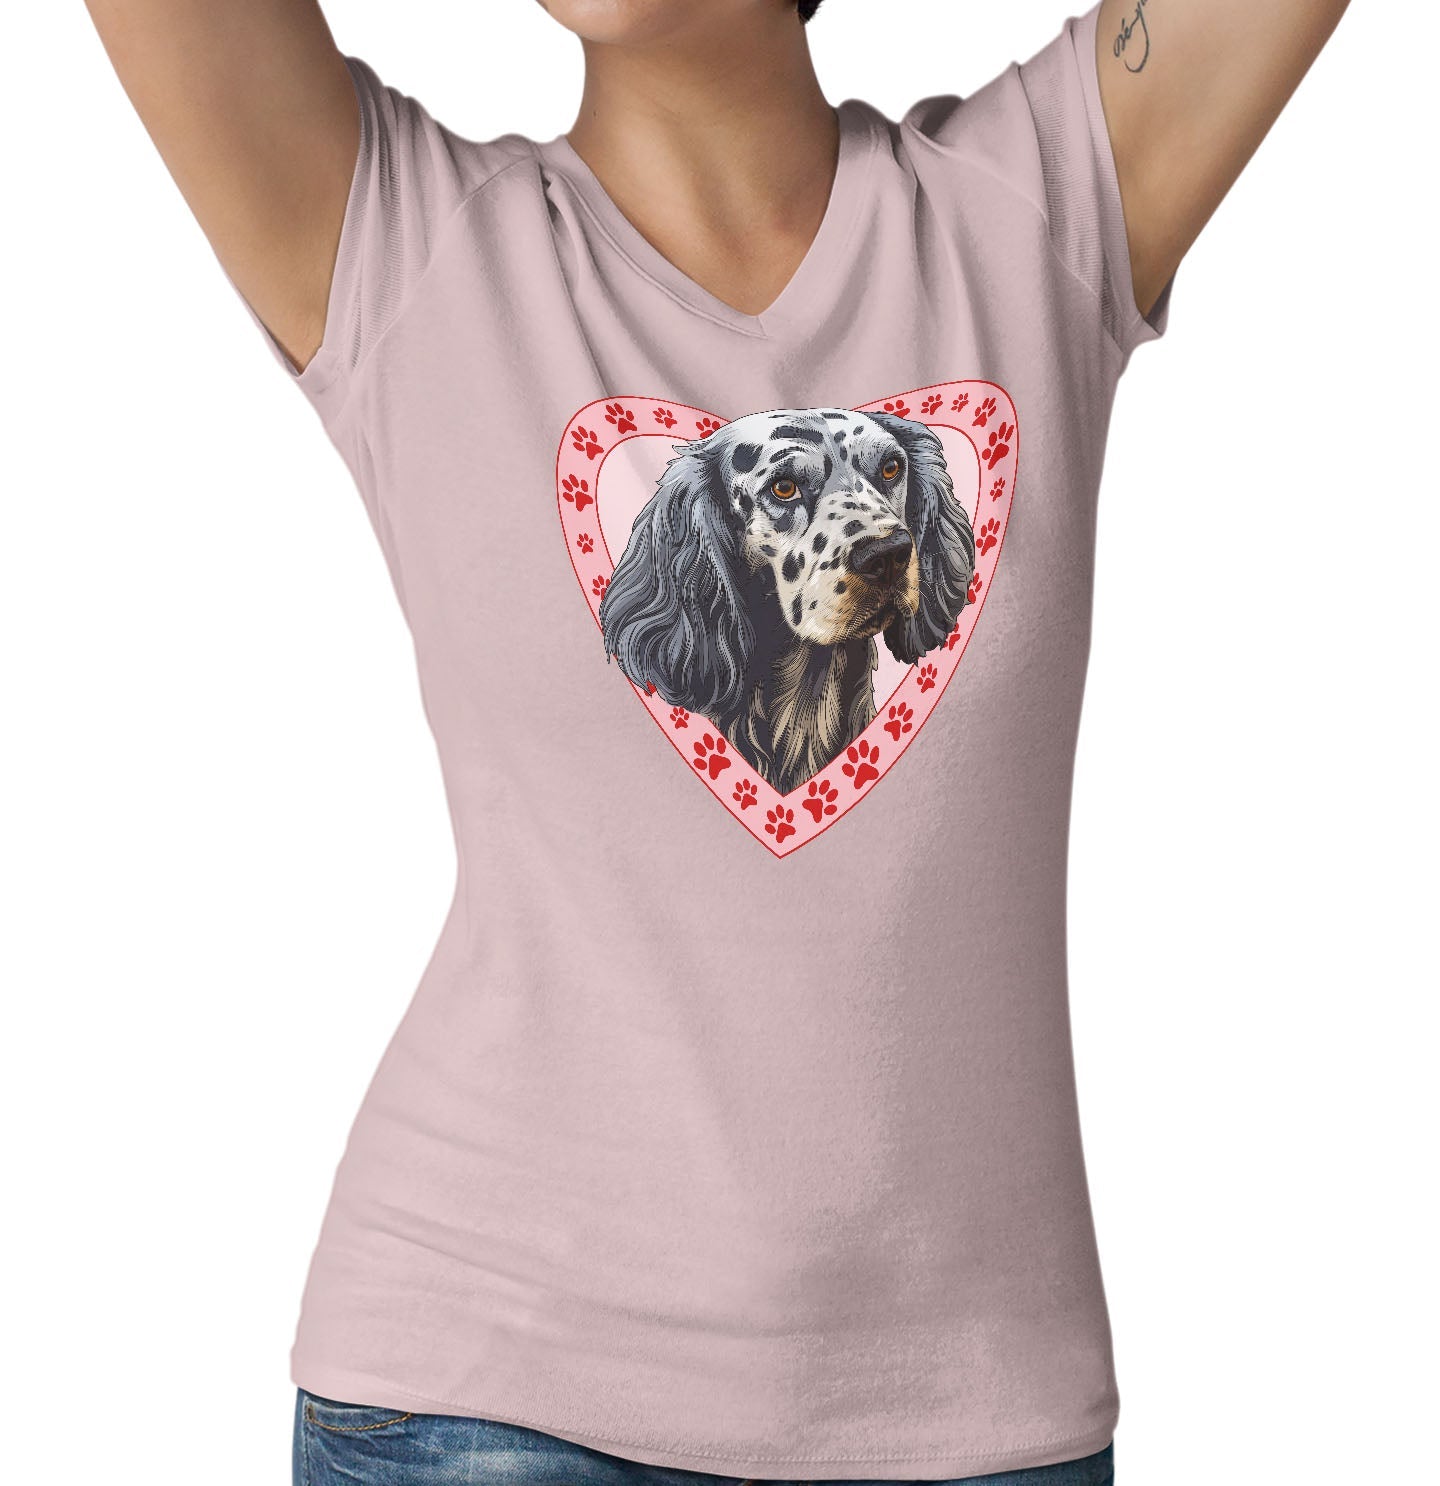 English Setter Illustration In Heart - Women's V-Neck T-Shirt